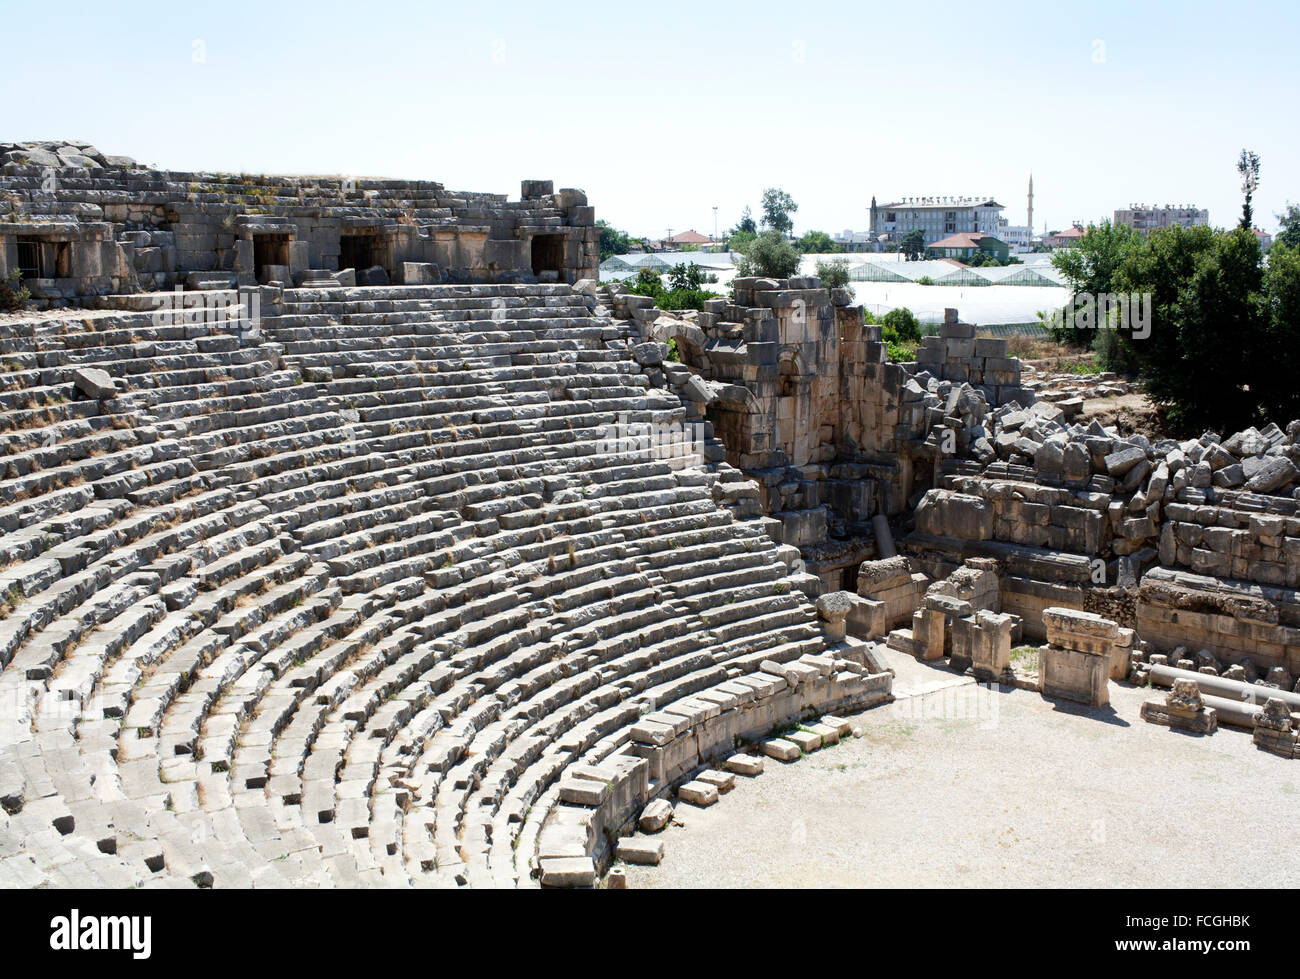 Théâtre grec antique dans la ville antique de Myra, région d'Antalya, Turquie Banque D'Images